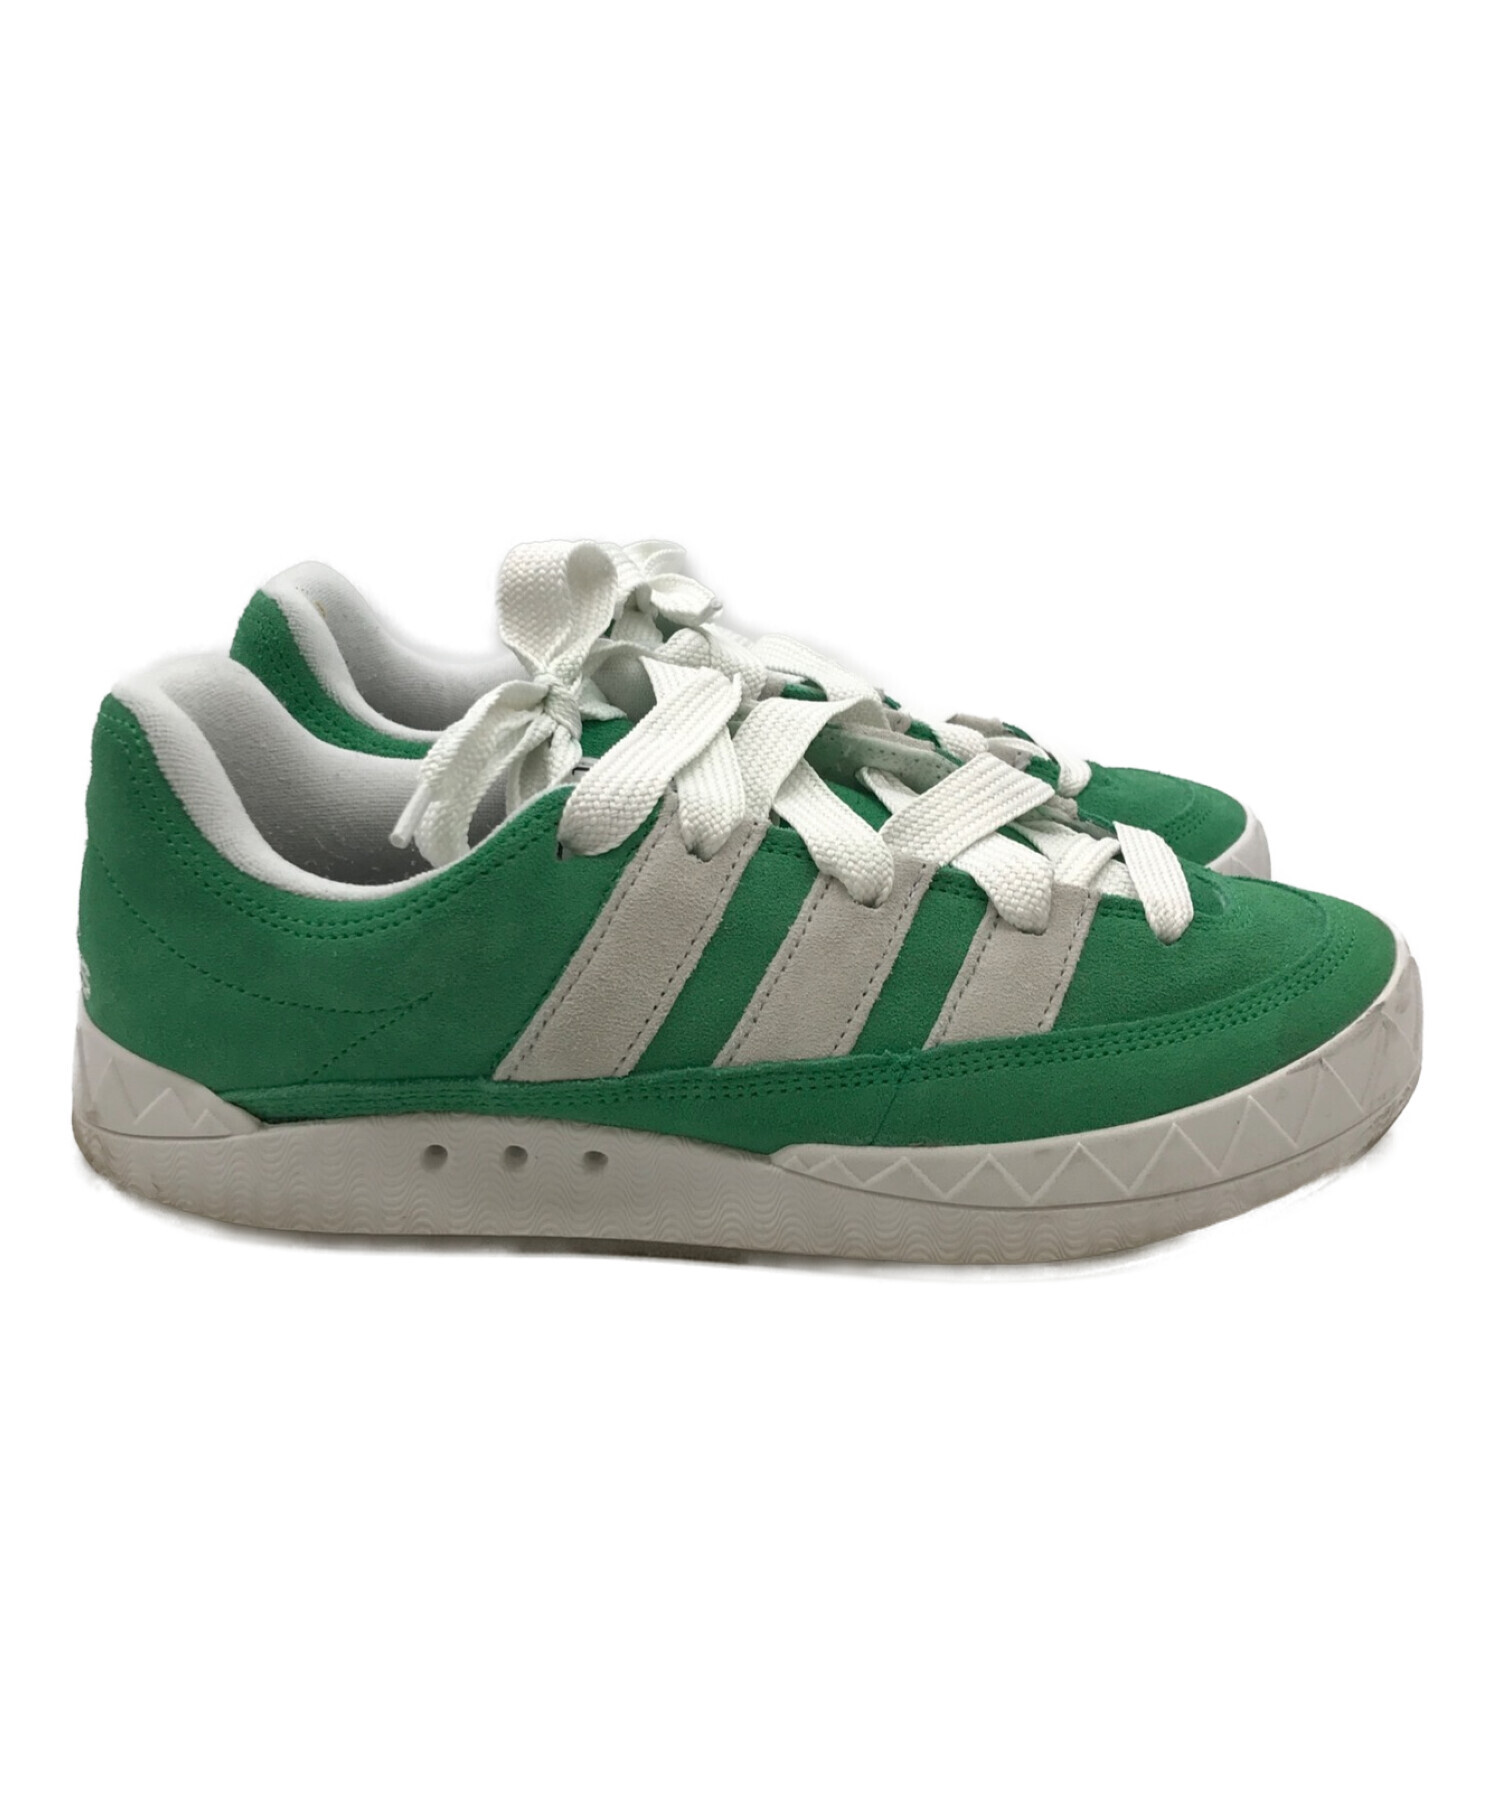 Adidas adimatic green 27.5cm 新品